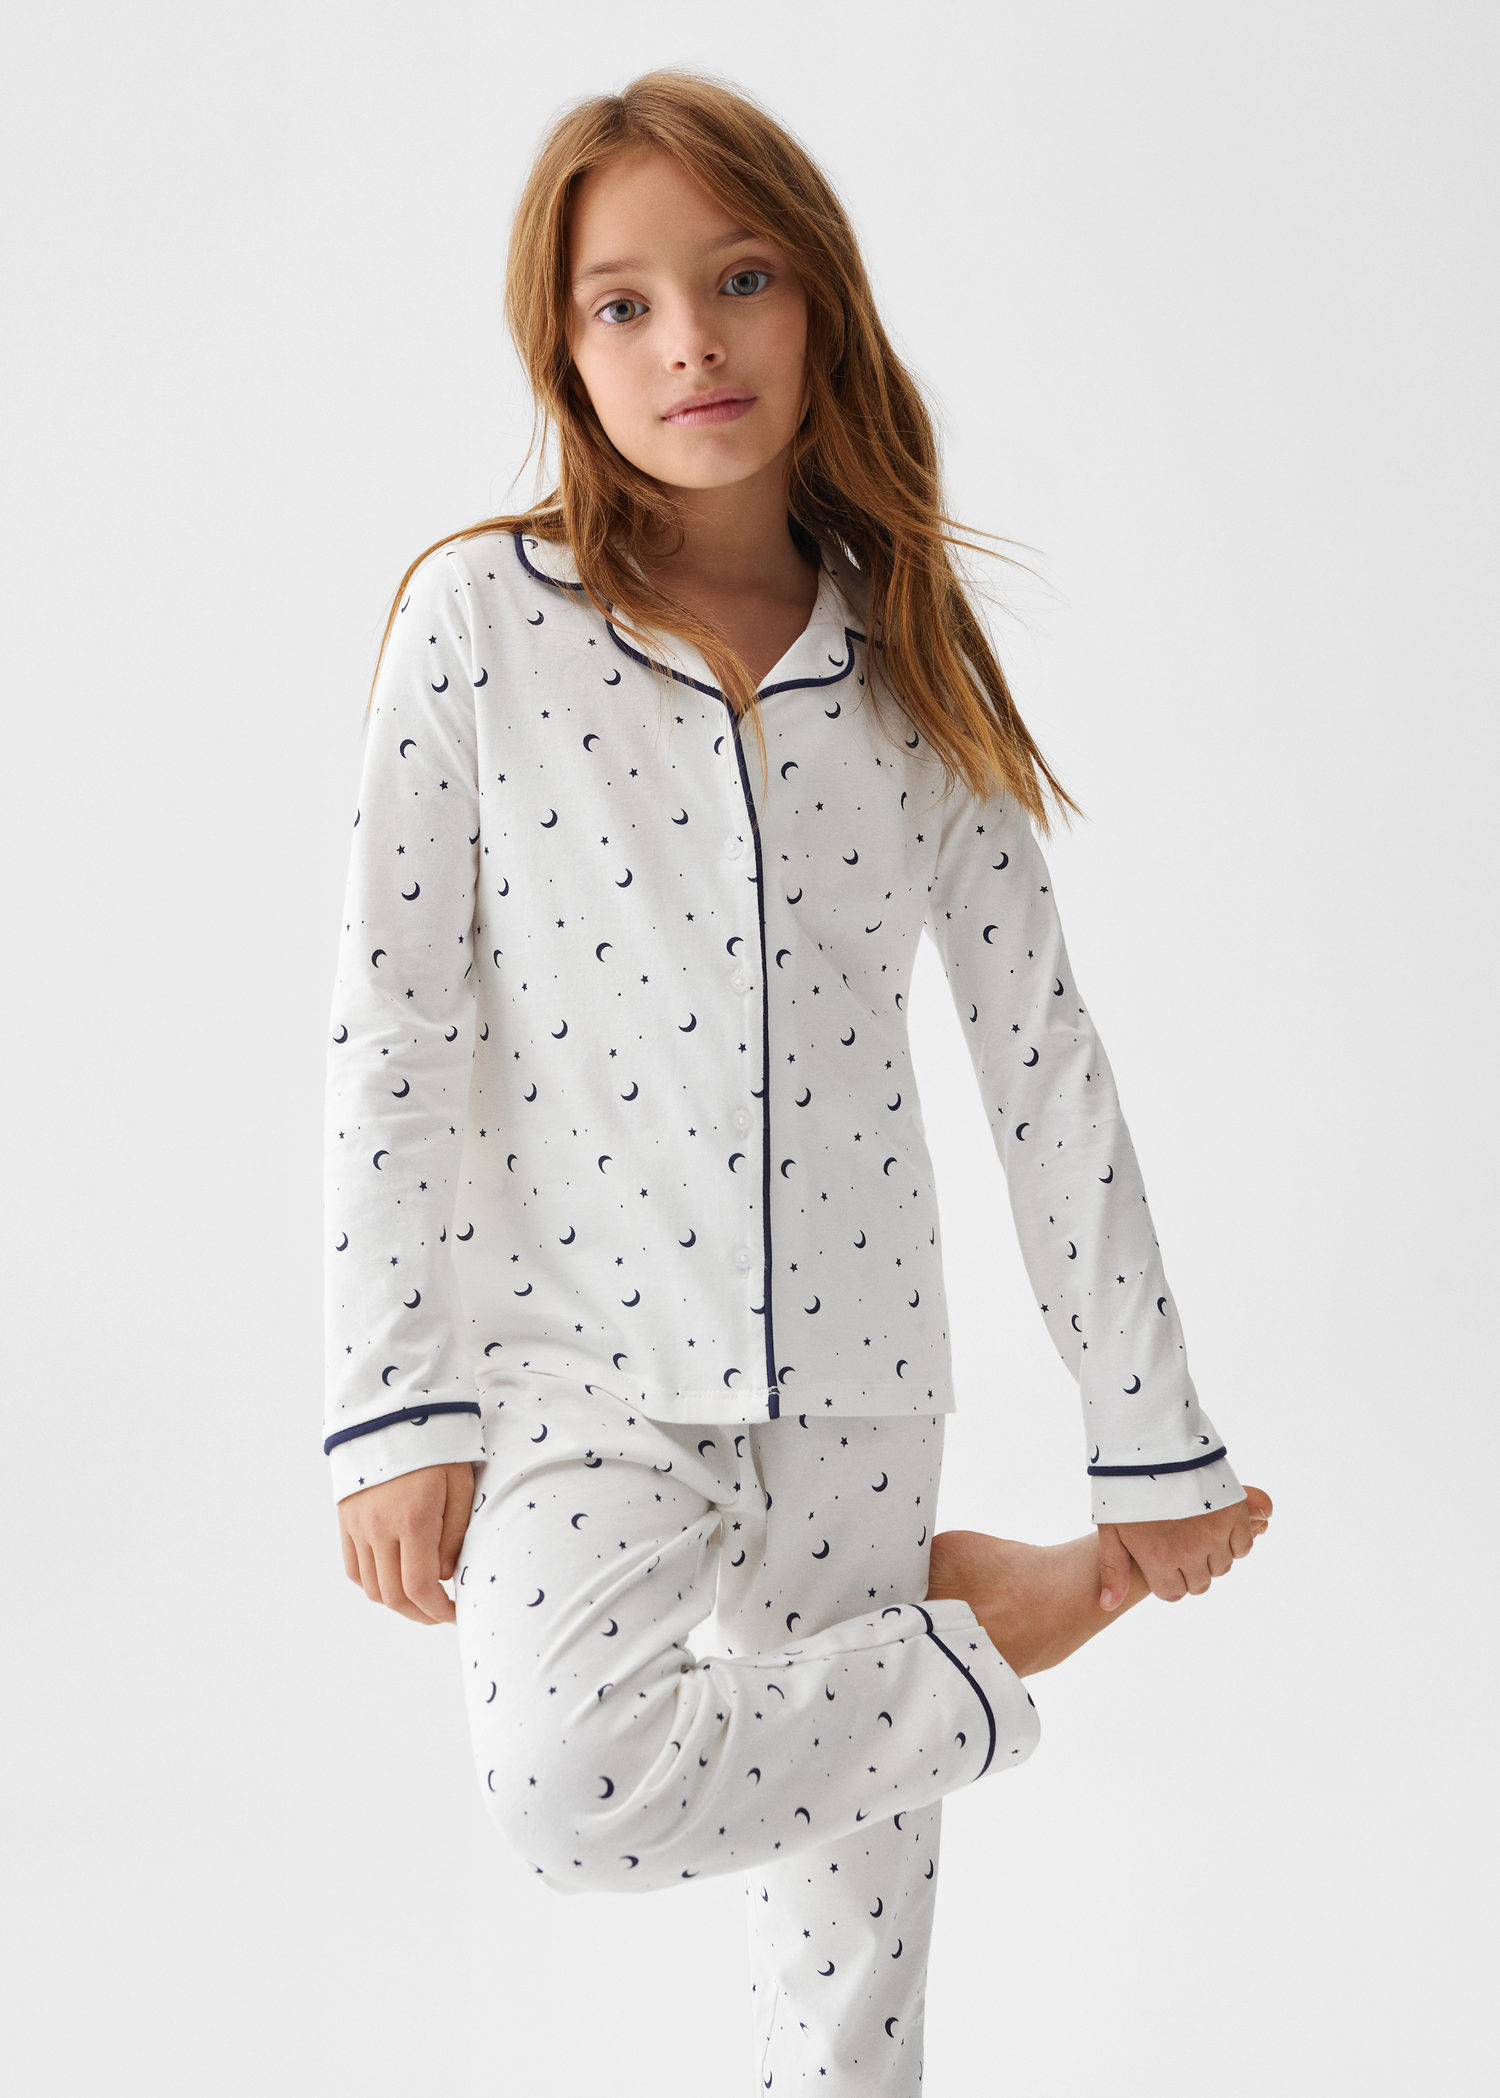 Printed cotton pyjamas